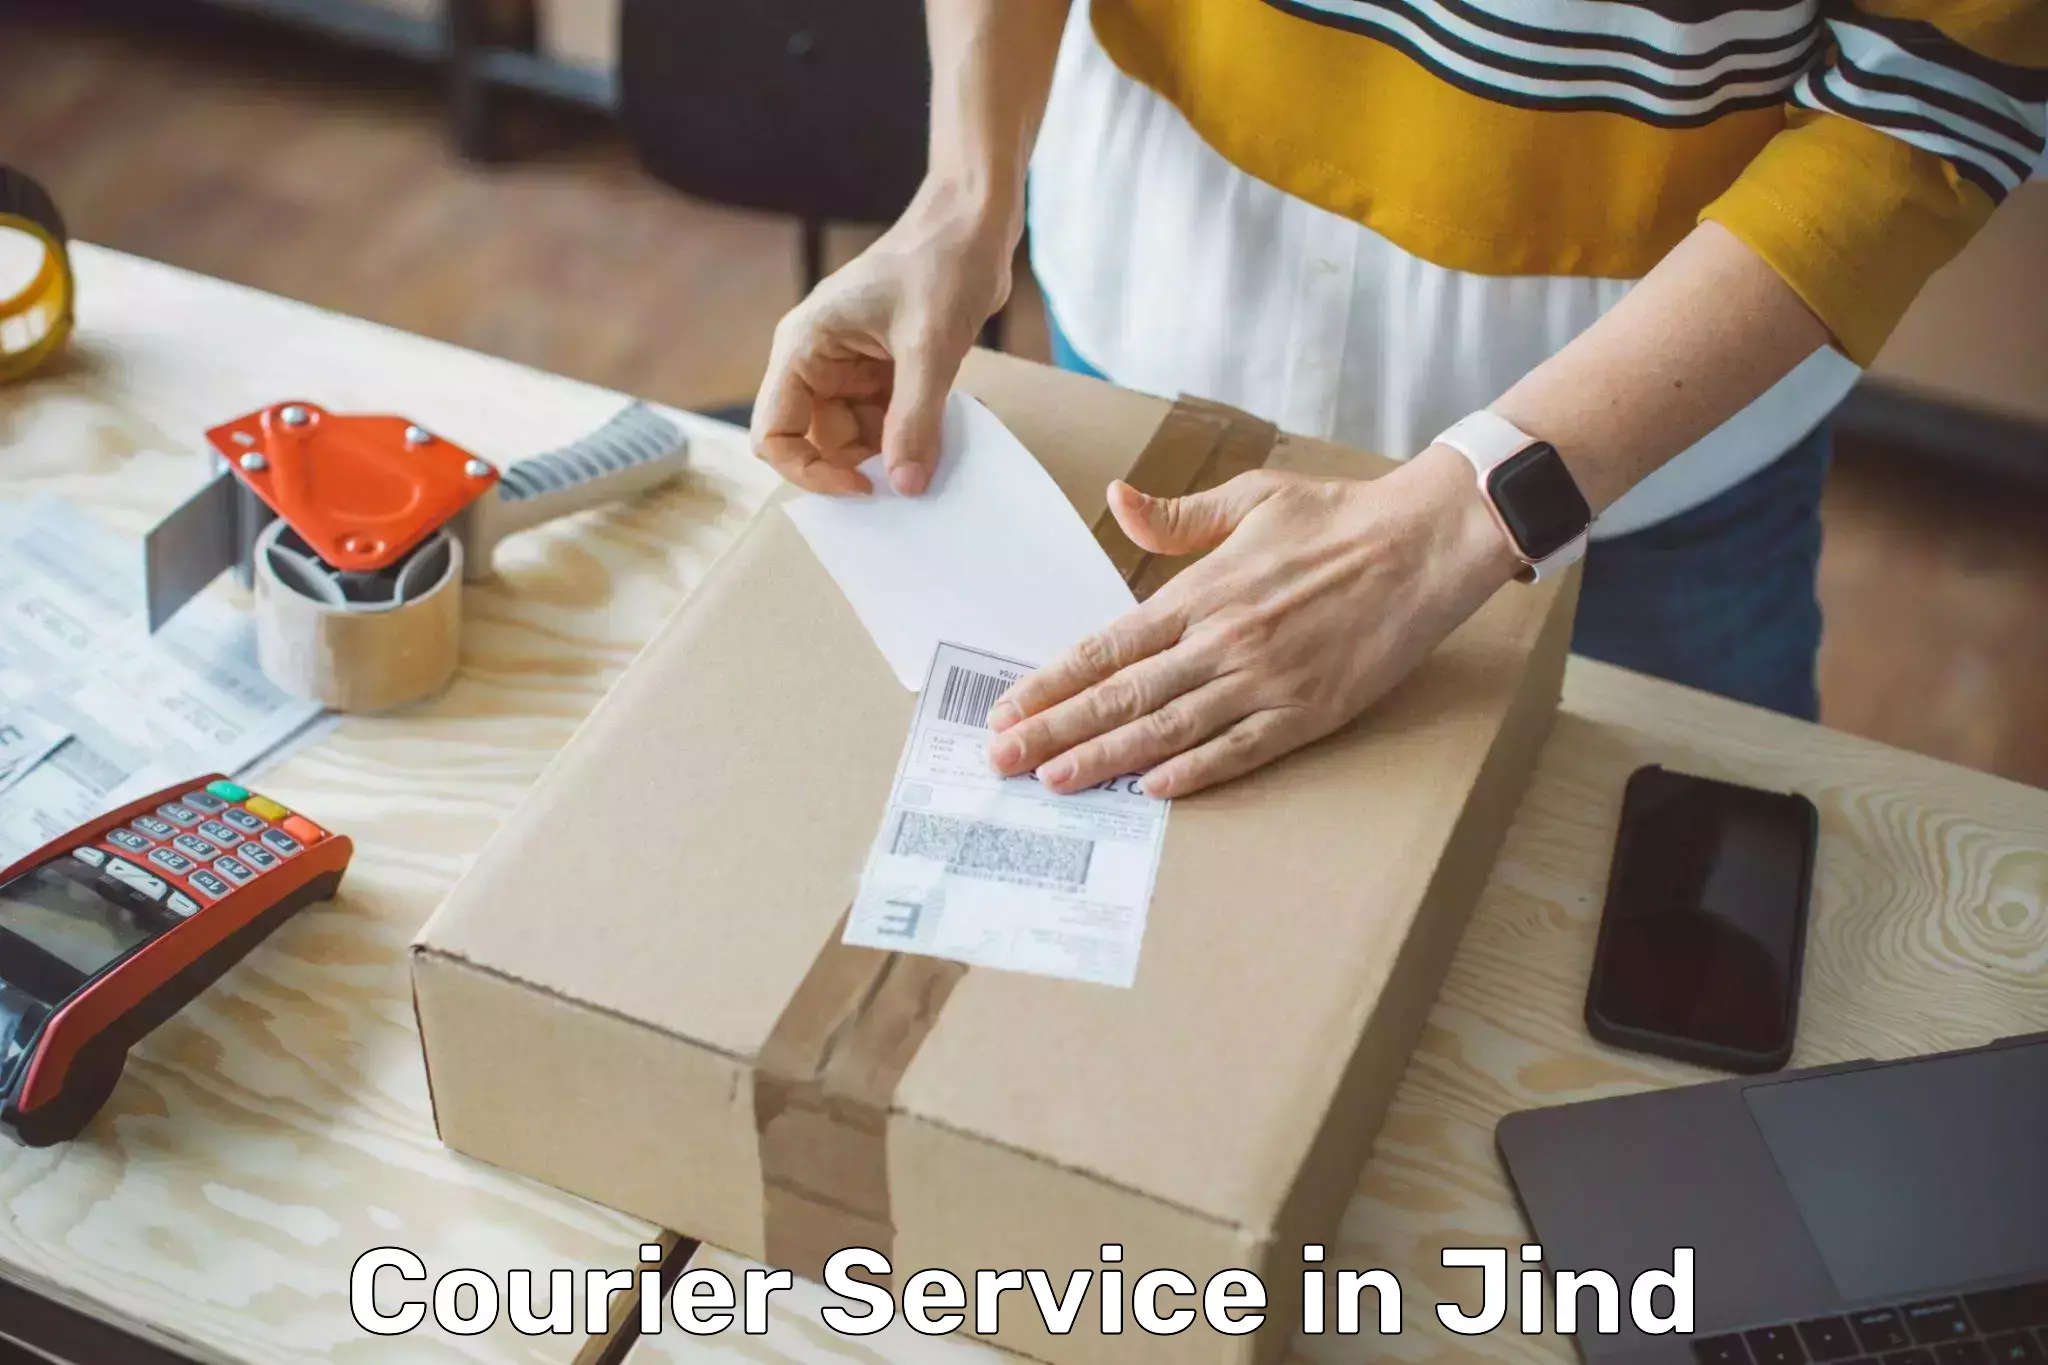 Modern delivery methods in Jind